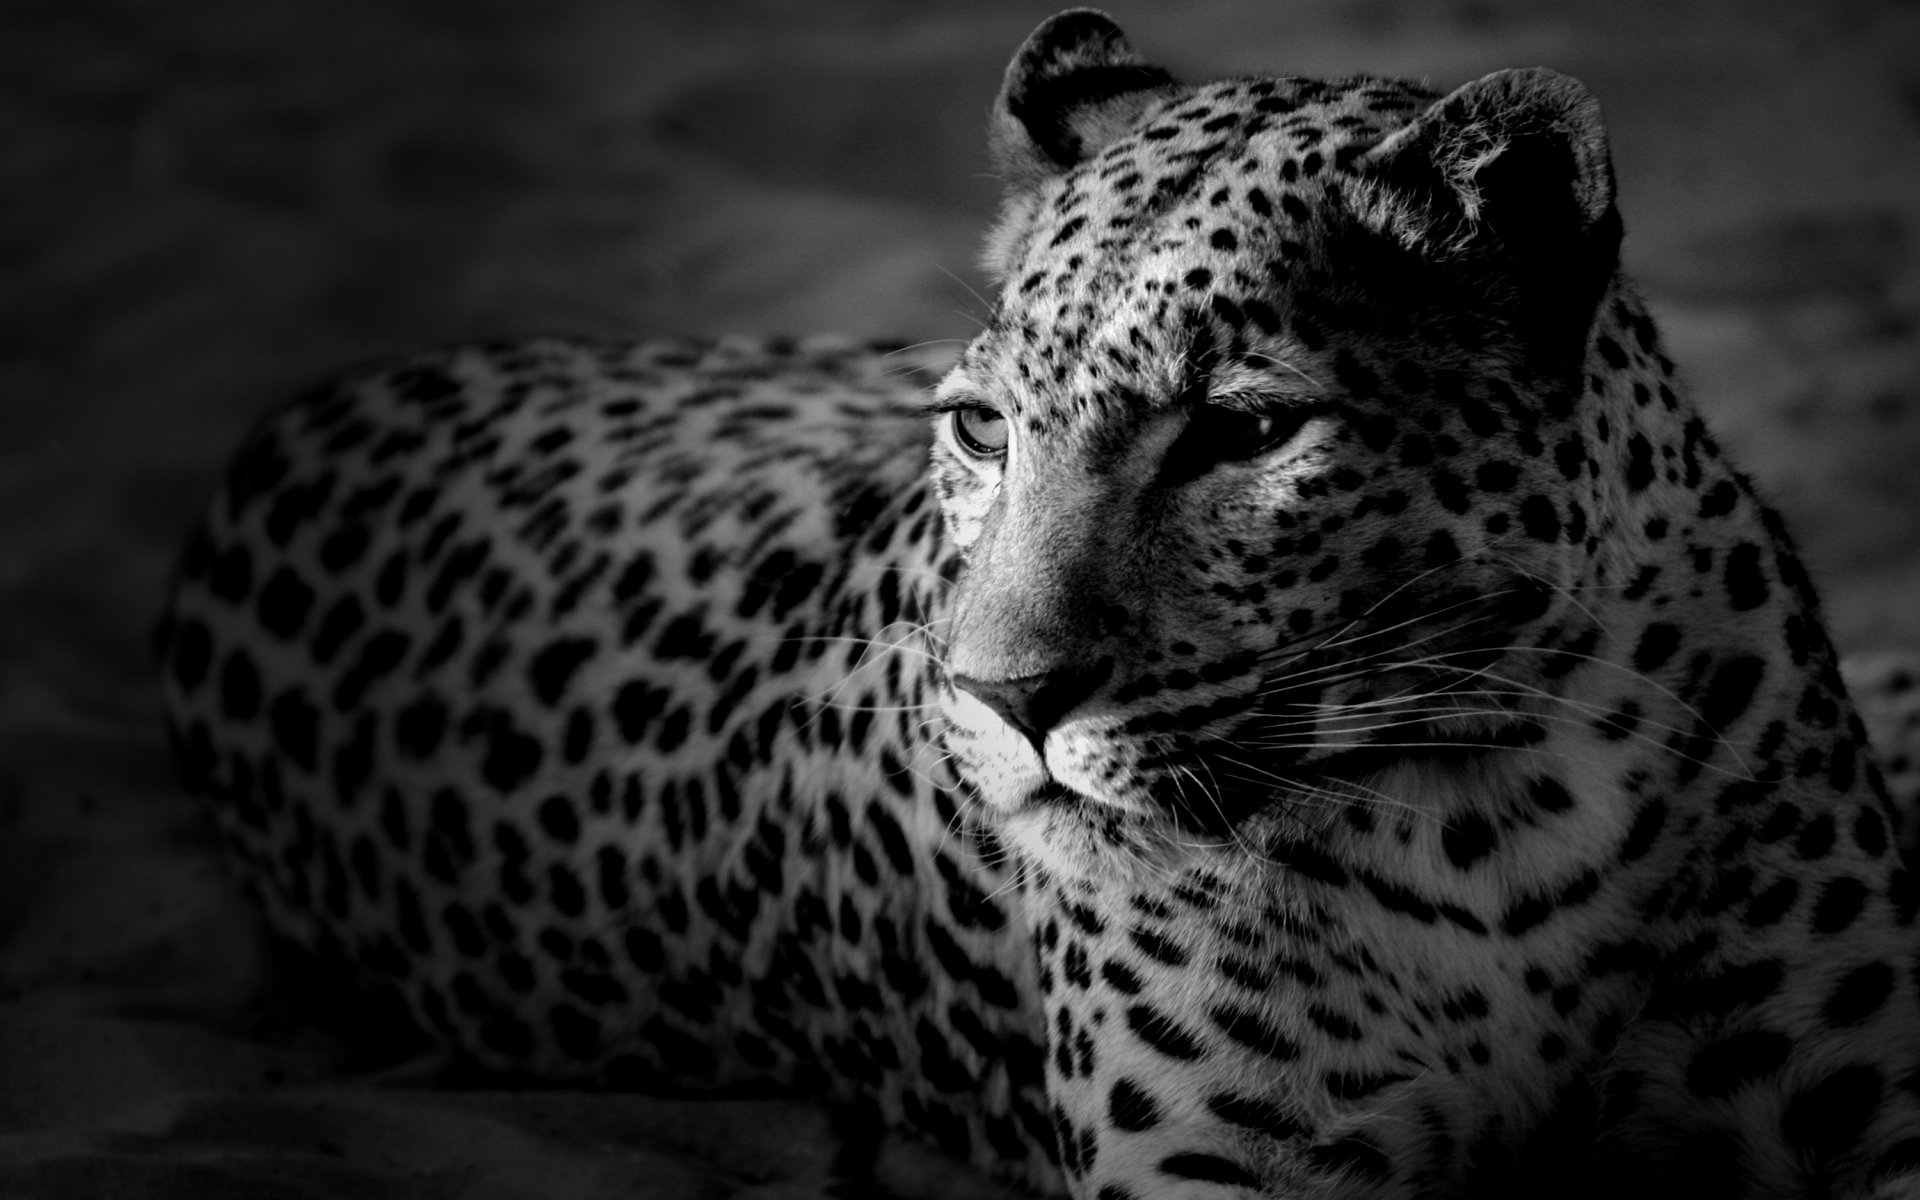 New Leopard Wallpaper iPhone Imagebank Biz